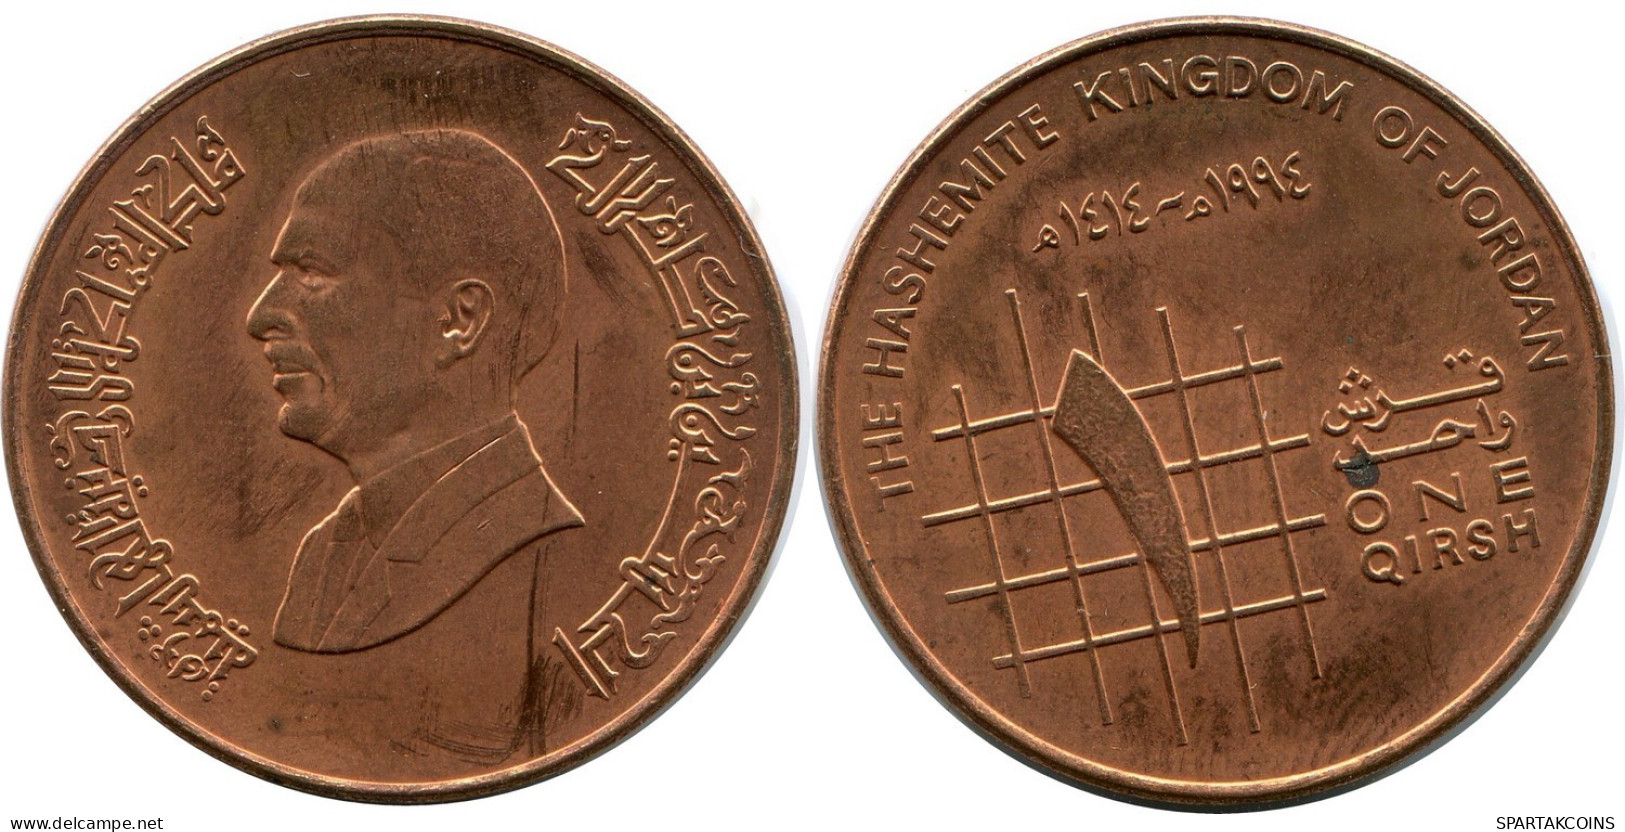 1 QIRSH 1994 JORDAN Coin #AP090.U.A - Jordan